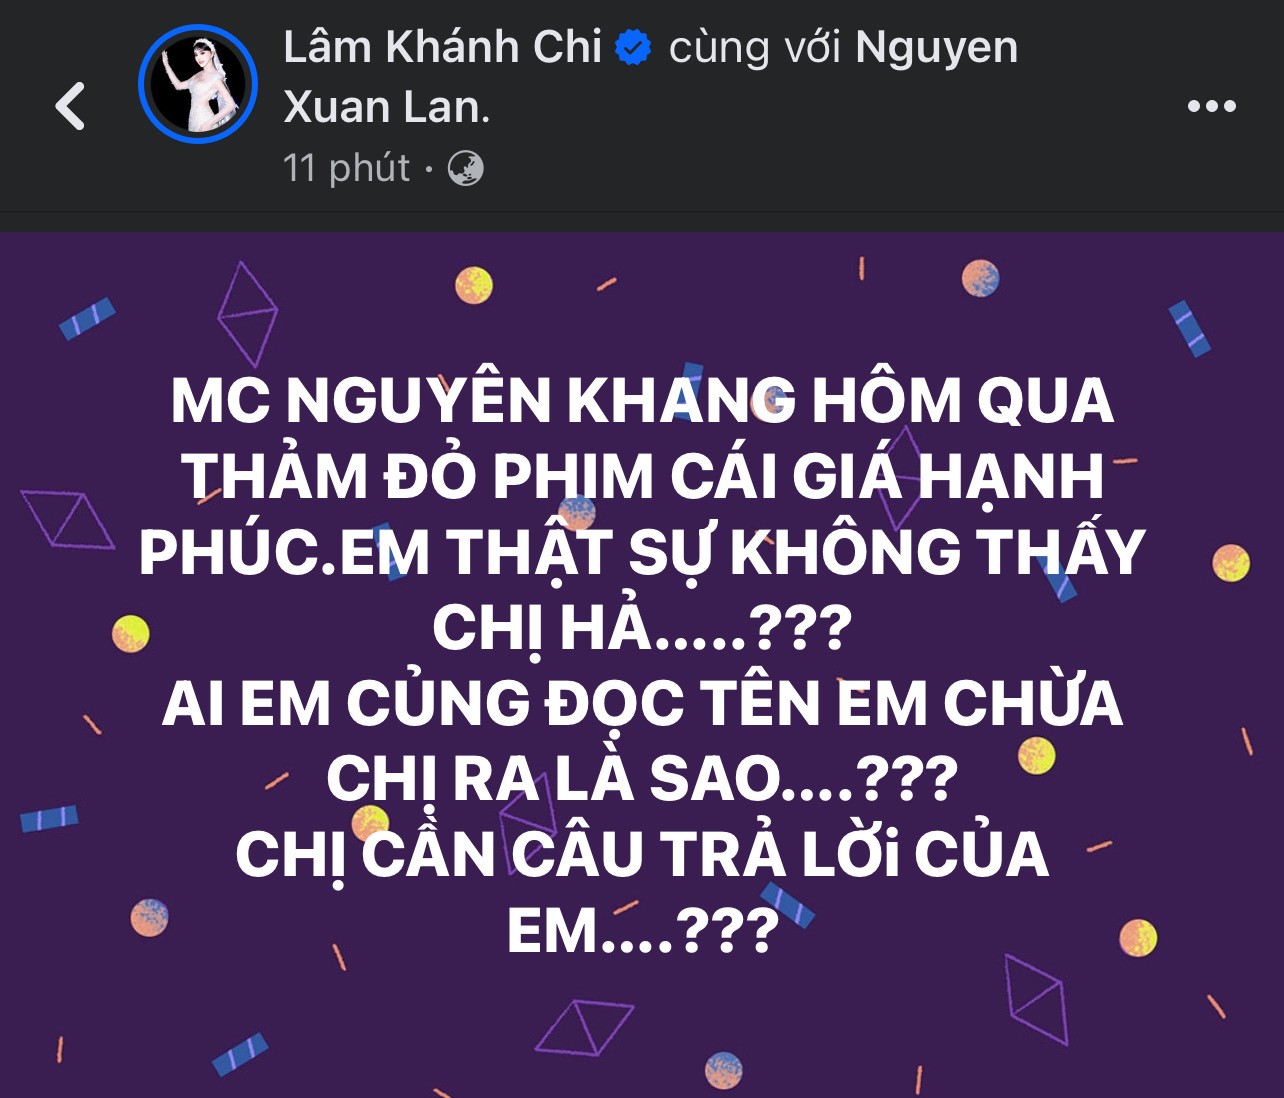 Lâm Khánh Chi gọi thẳng tên Nguyên Khang vì không được đọc tên lên thảm đỏ premiere phim điện ảnh Cái giá của hạnh phúc.